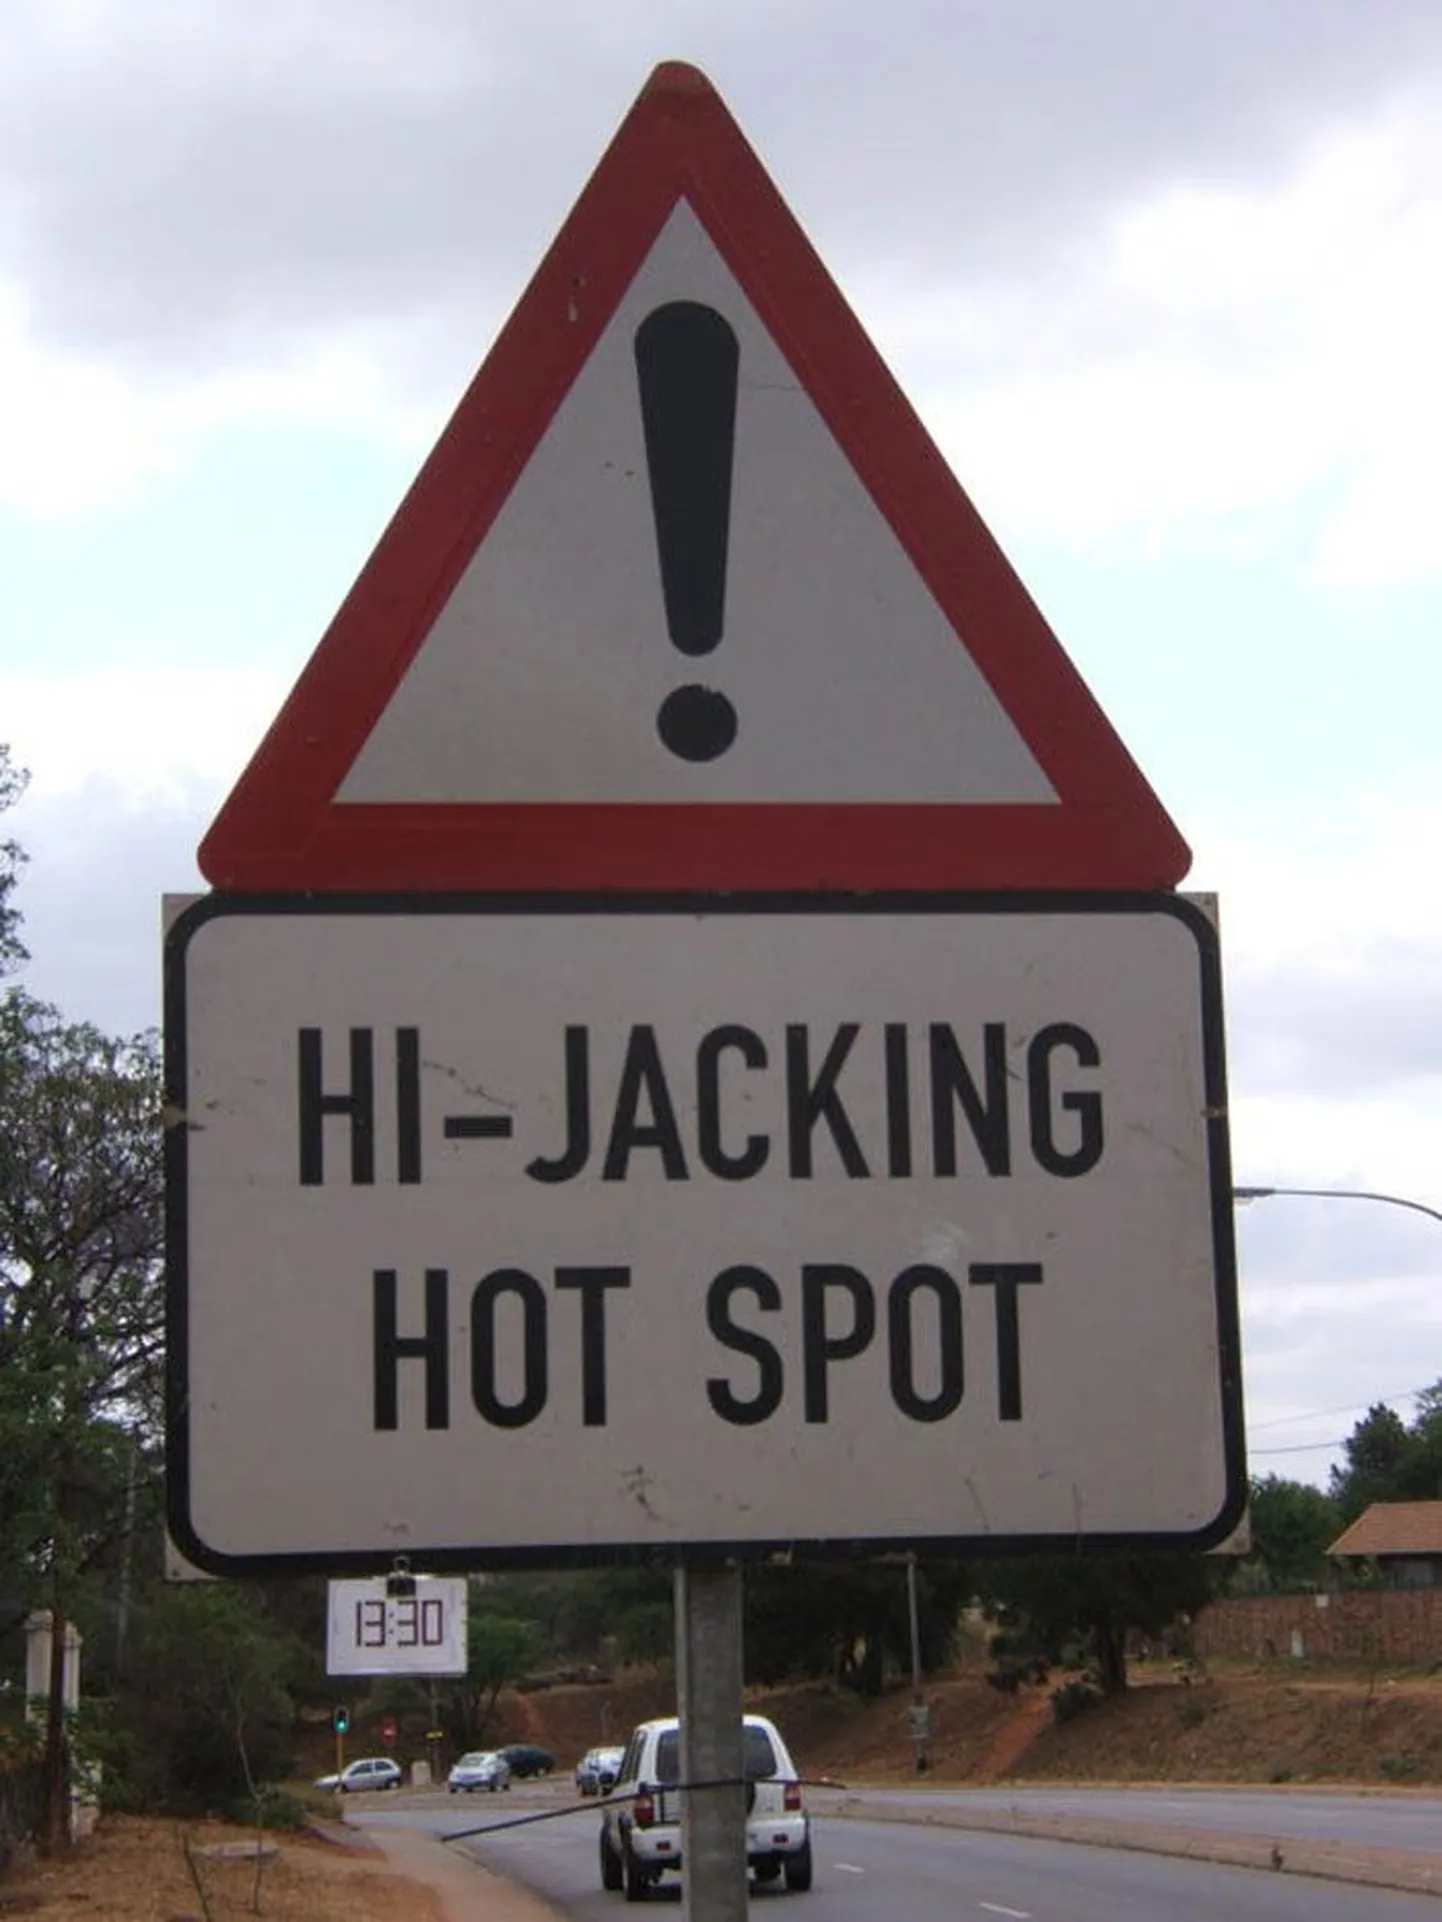 Такие знаки в ЮАР — обычное явление. В определенных регионах они предупреждают людей об опасности угона автомобилей.